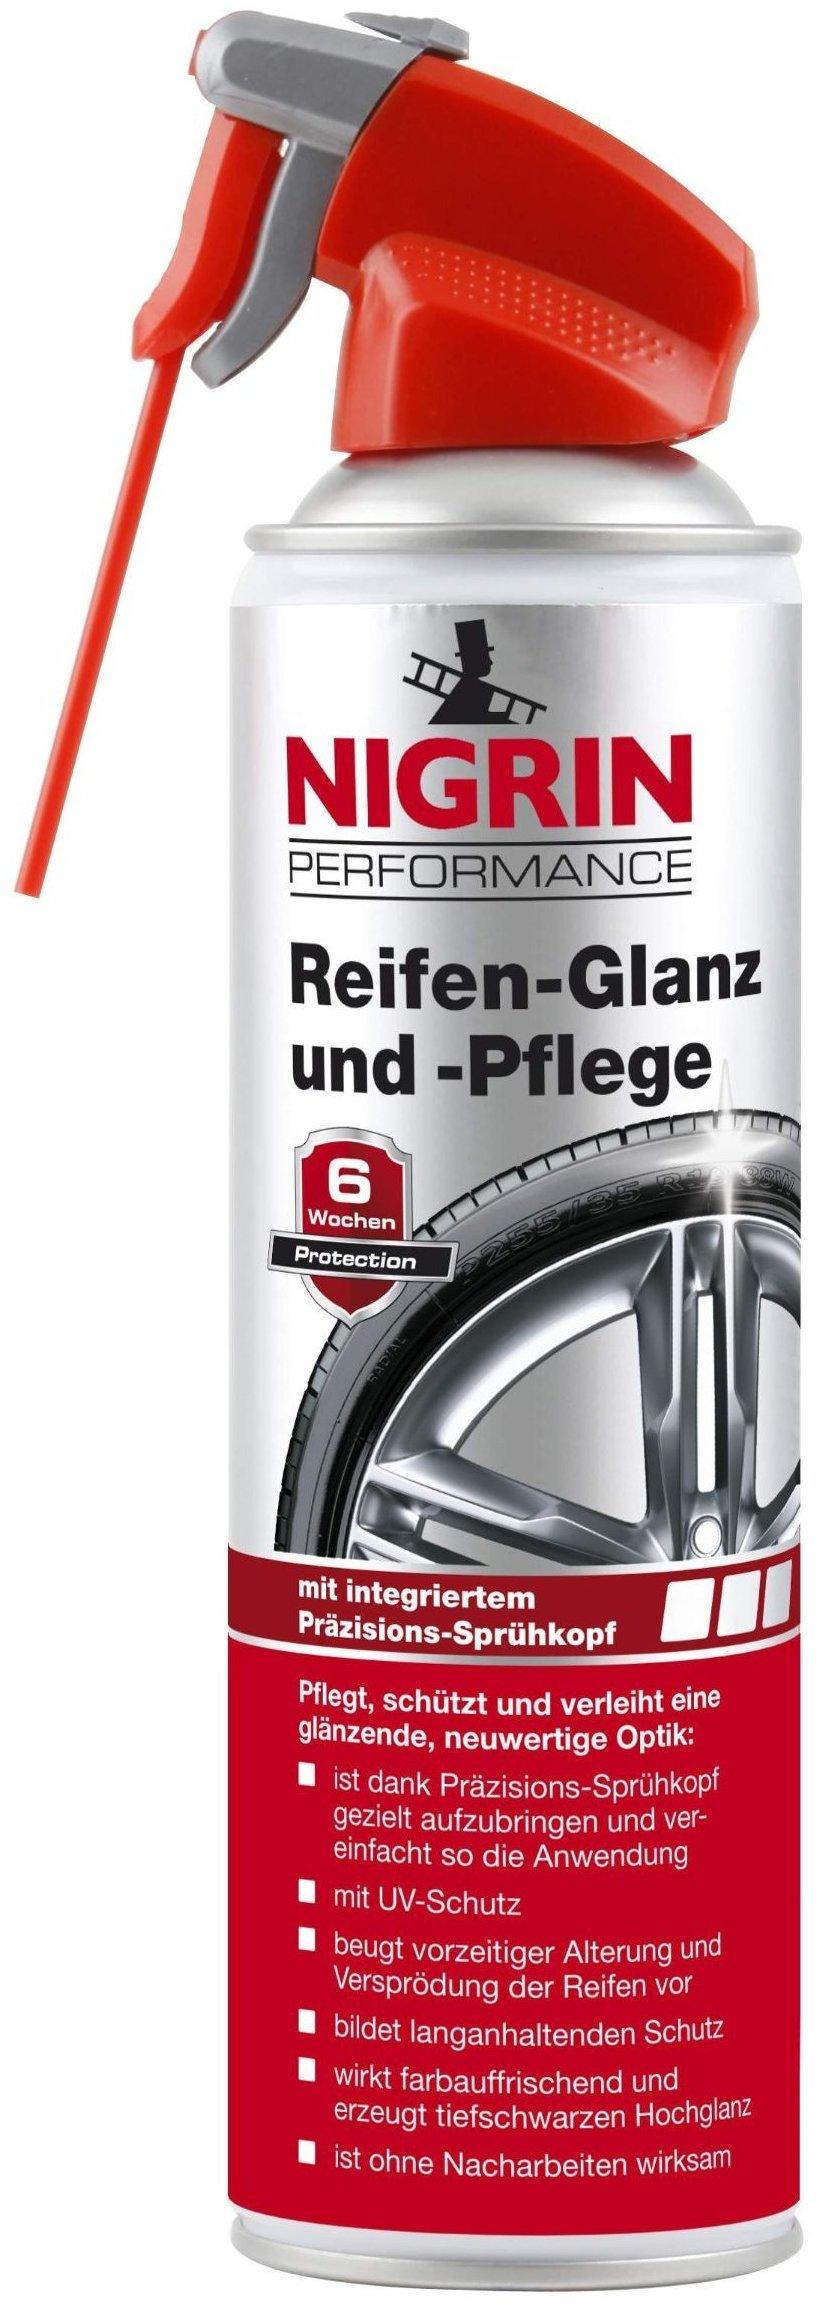 Nigrin Performance Reifen-Glanz und -Pflege Test ❤️ Jetzt ab 7,39 € (Mai  2022) Testbericht.de